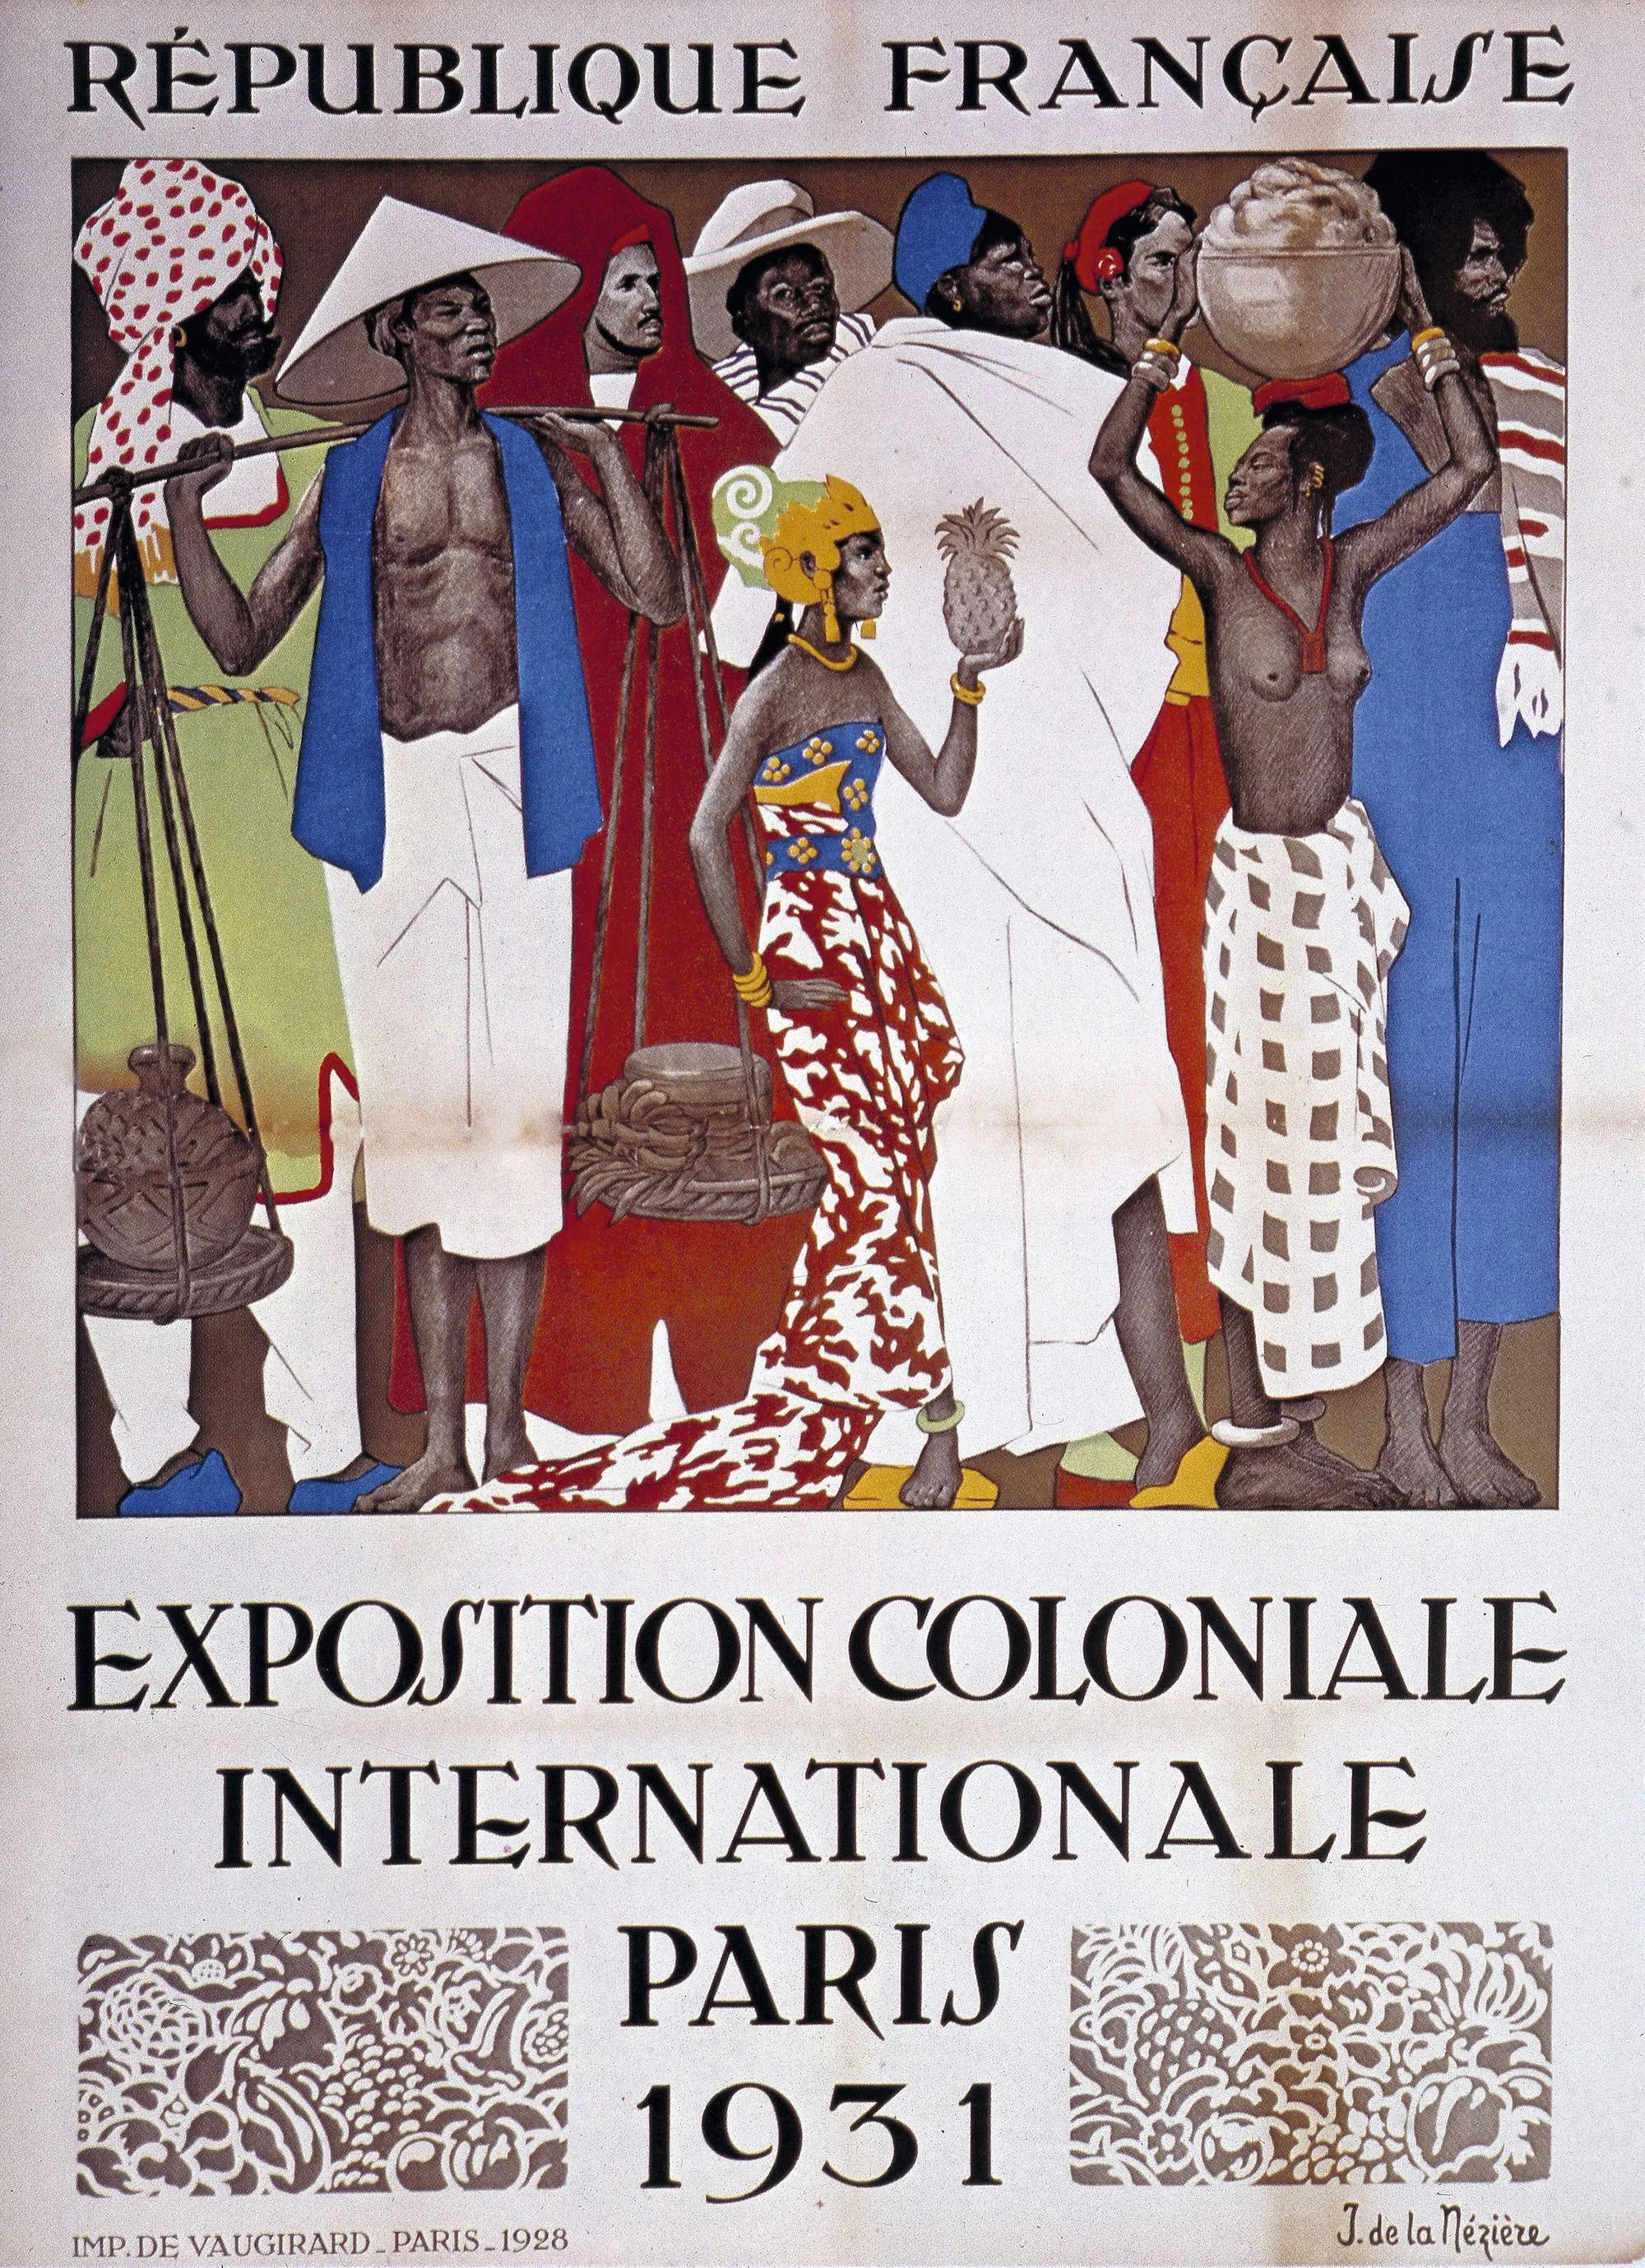 Affiche de l'exposition coloniale de Paris de 1931